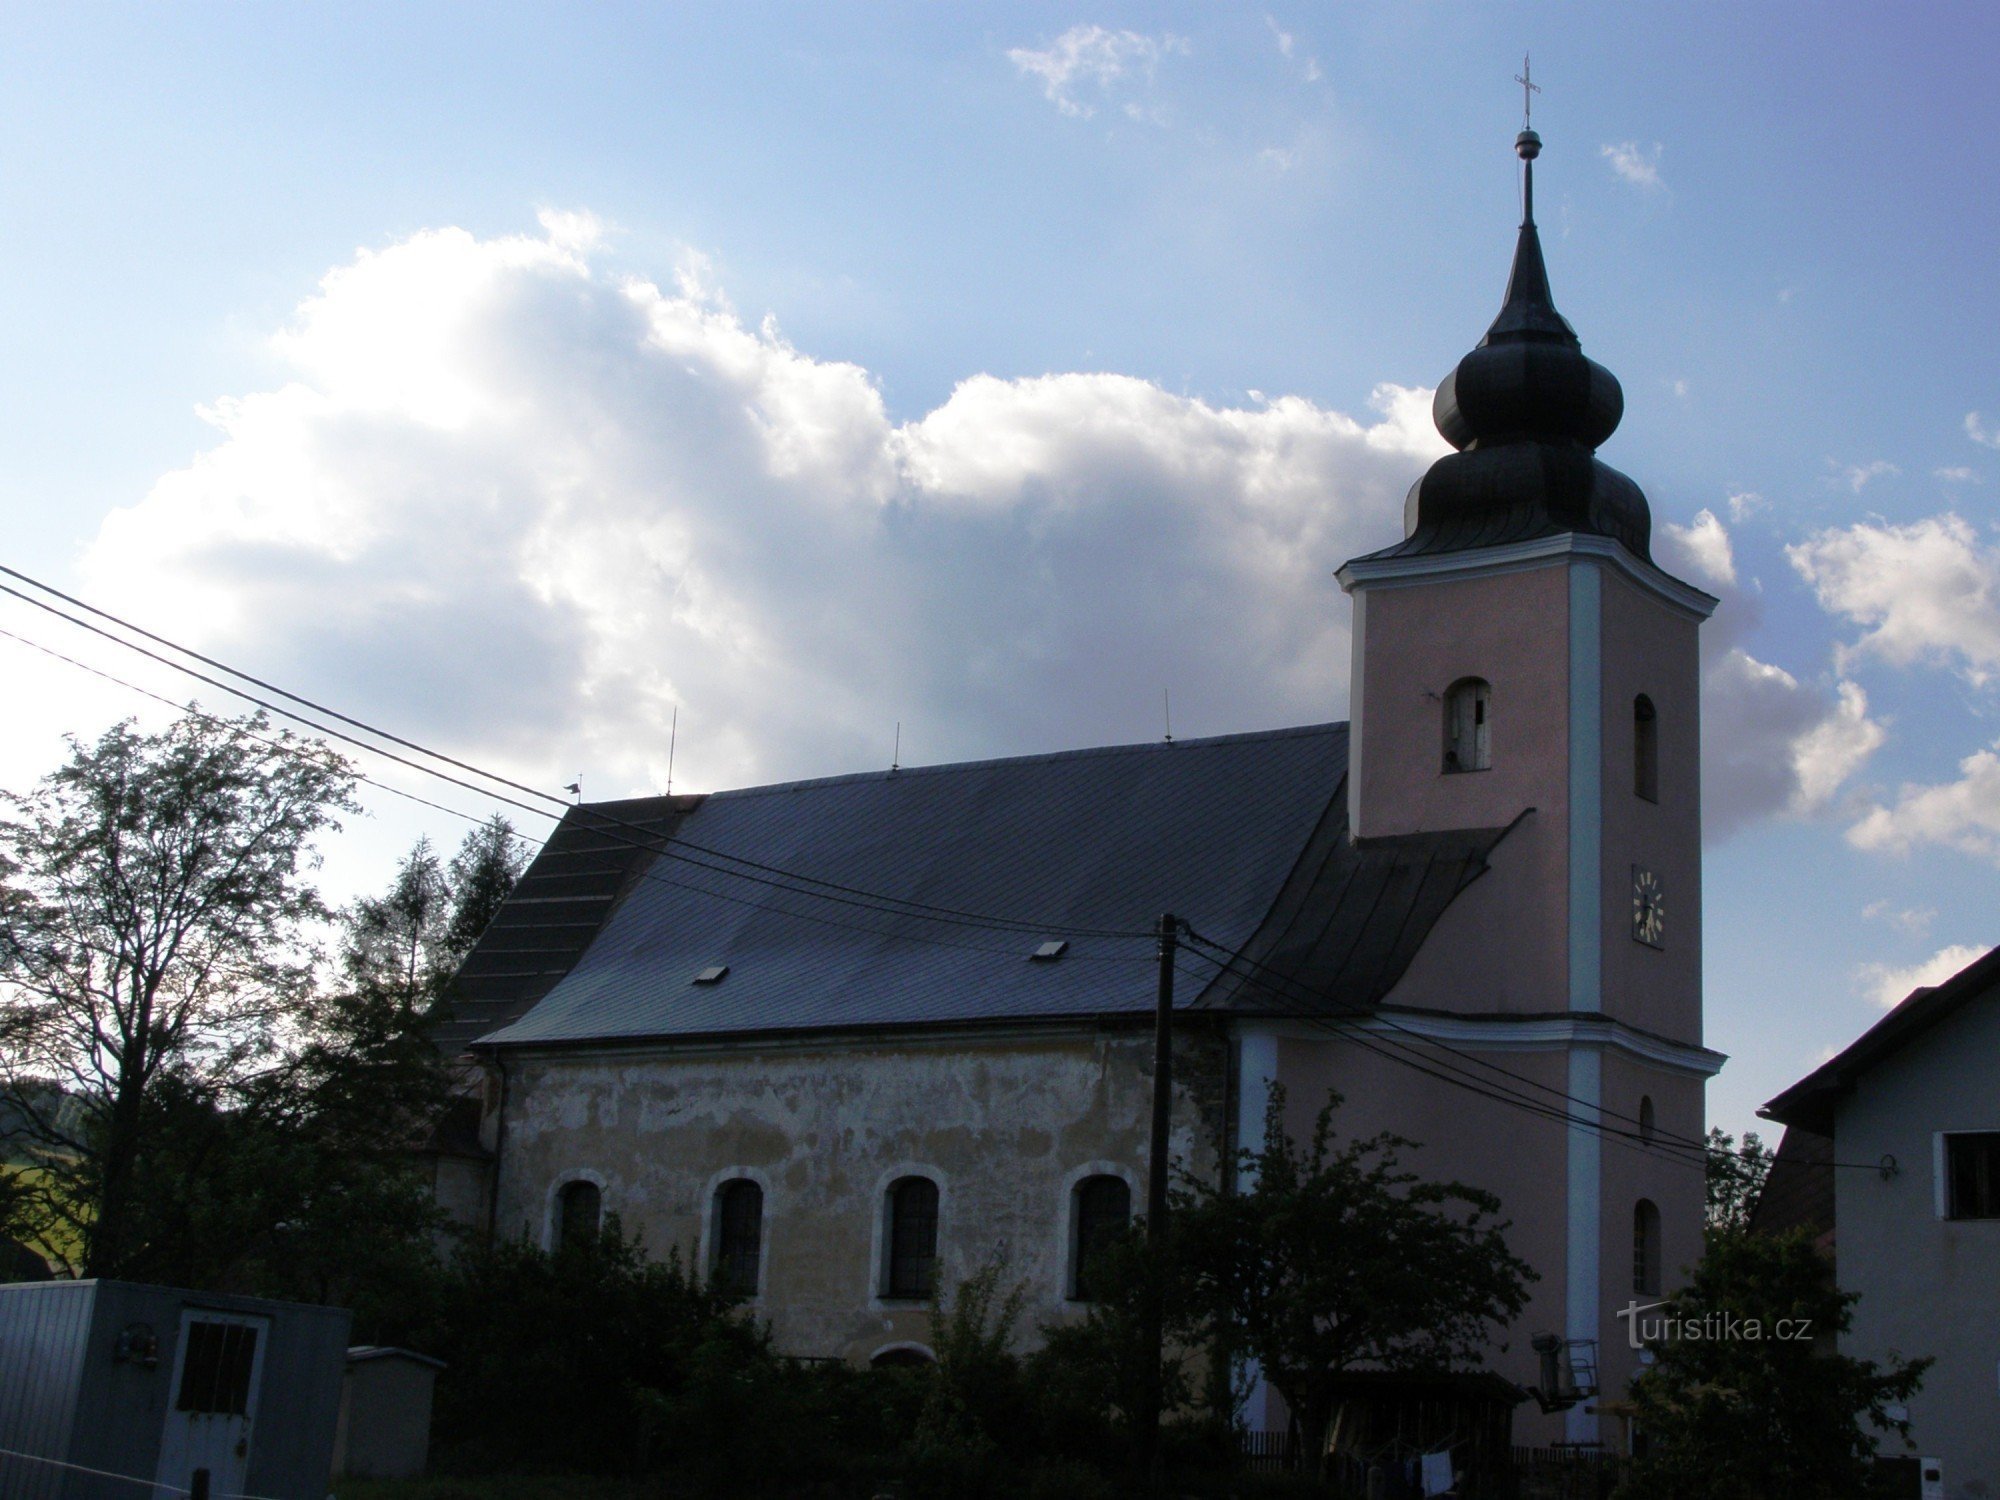 Domašov - Biserica Sf. Ioan Botezatorul